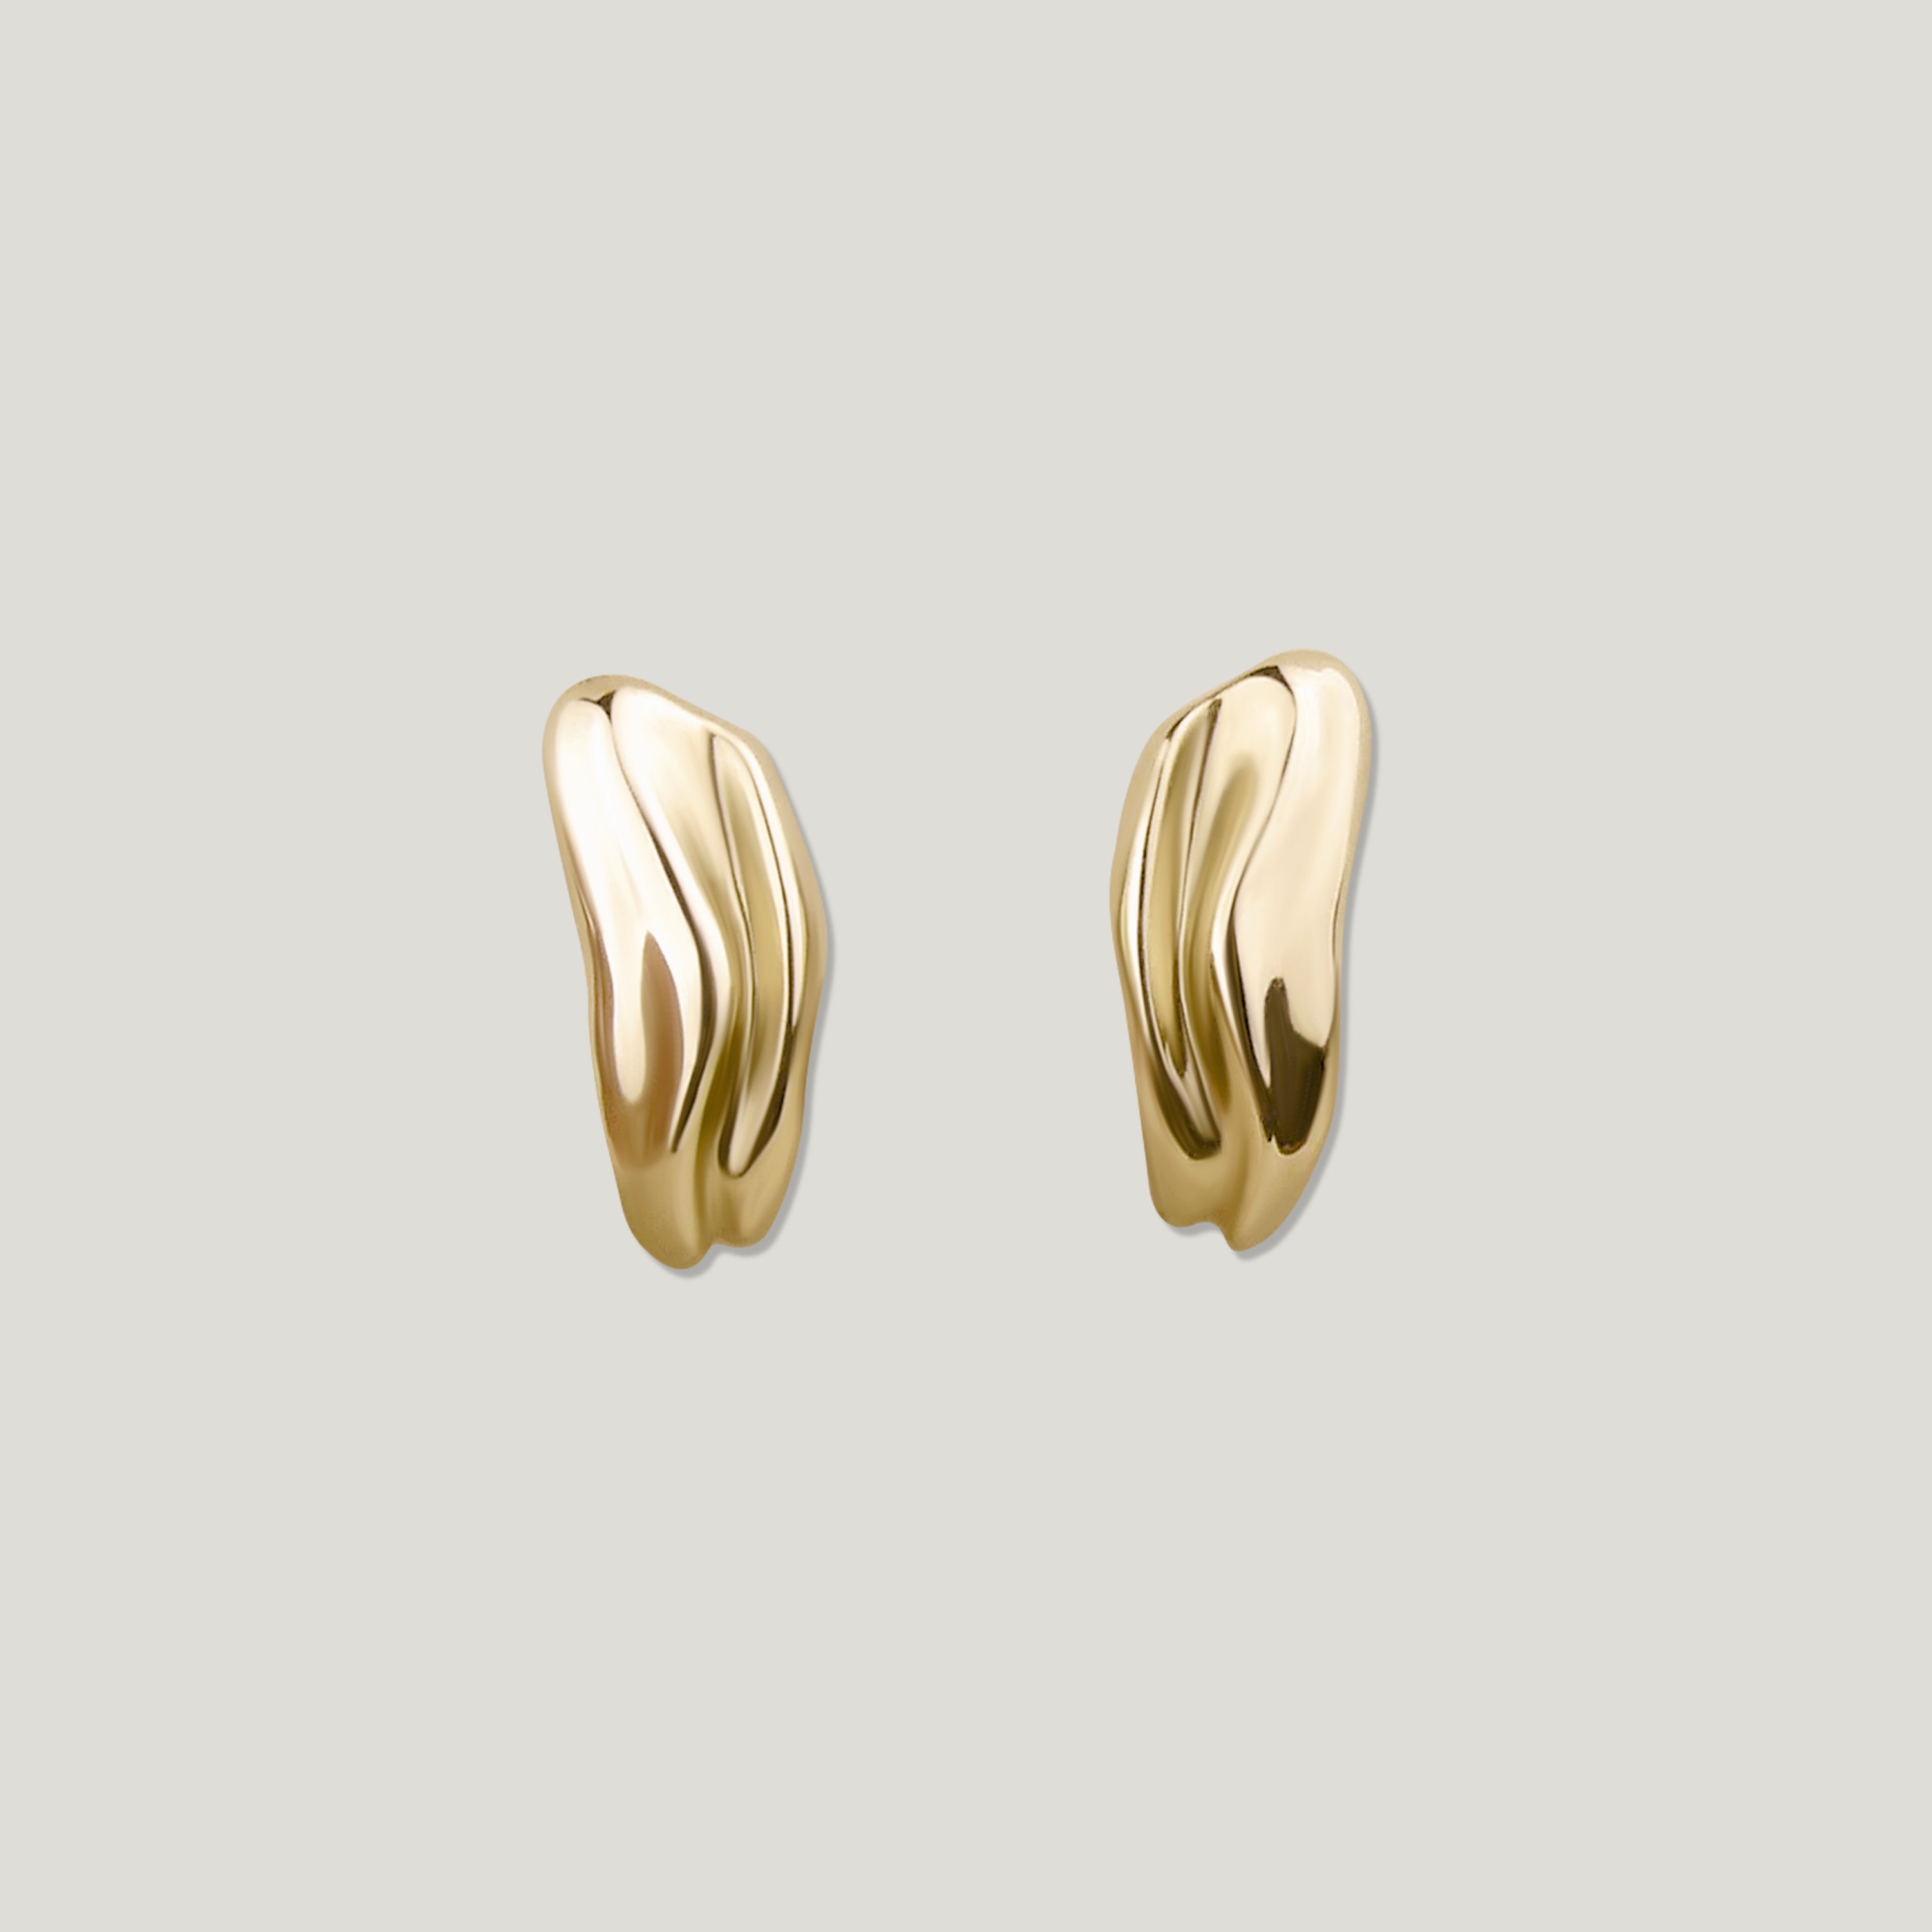 Gold Dune Huggie Hoop Earrings with organic texture